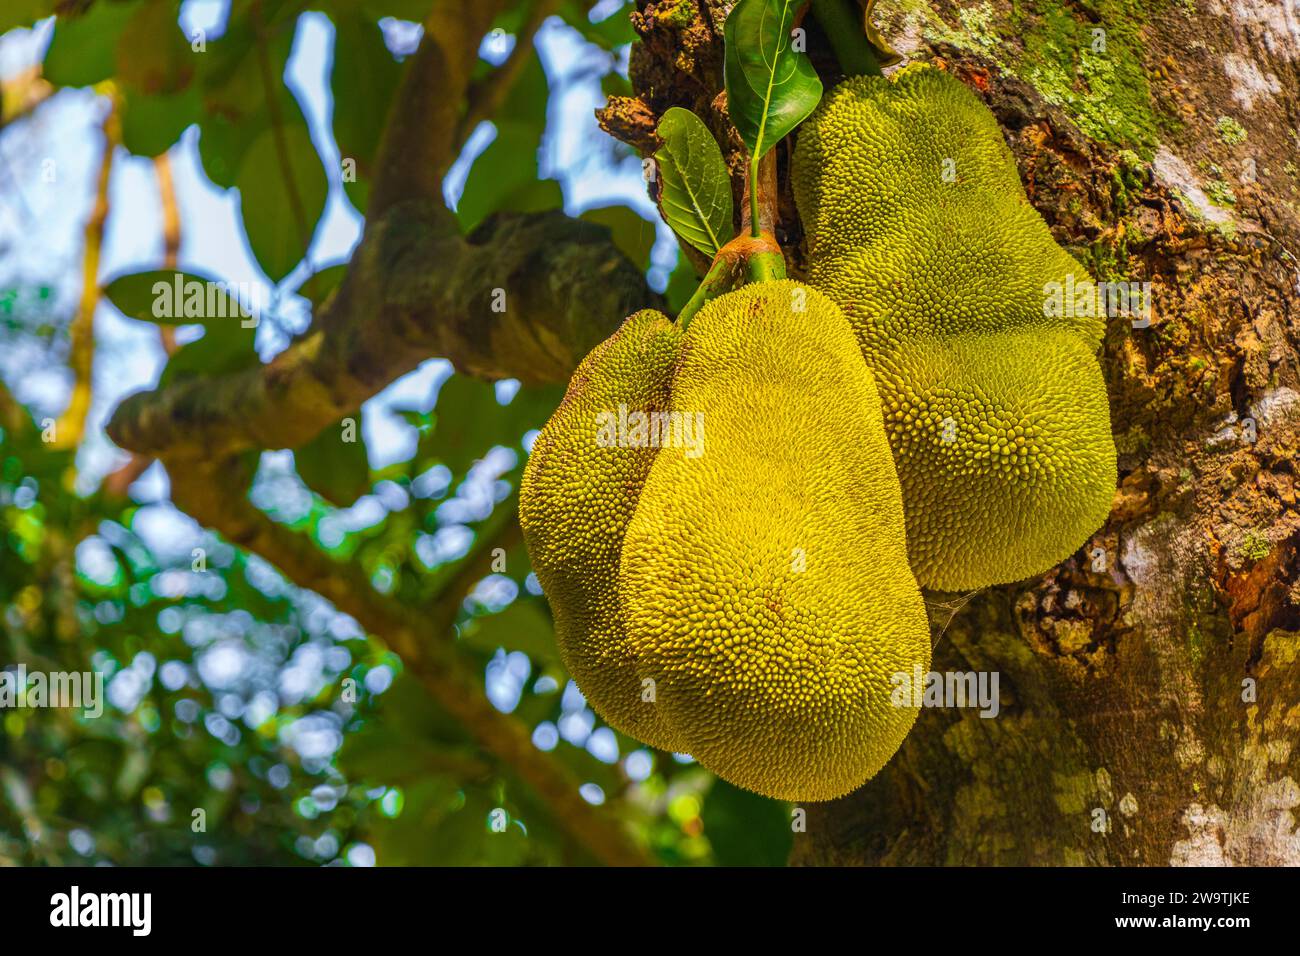 Jackfrucht Artocarpus Heterophyllus Wächst Auf Jack Tree In Der Natur Von Rio De Janeiro Brasilien. Stockfoto